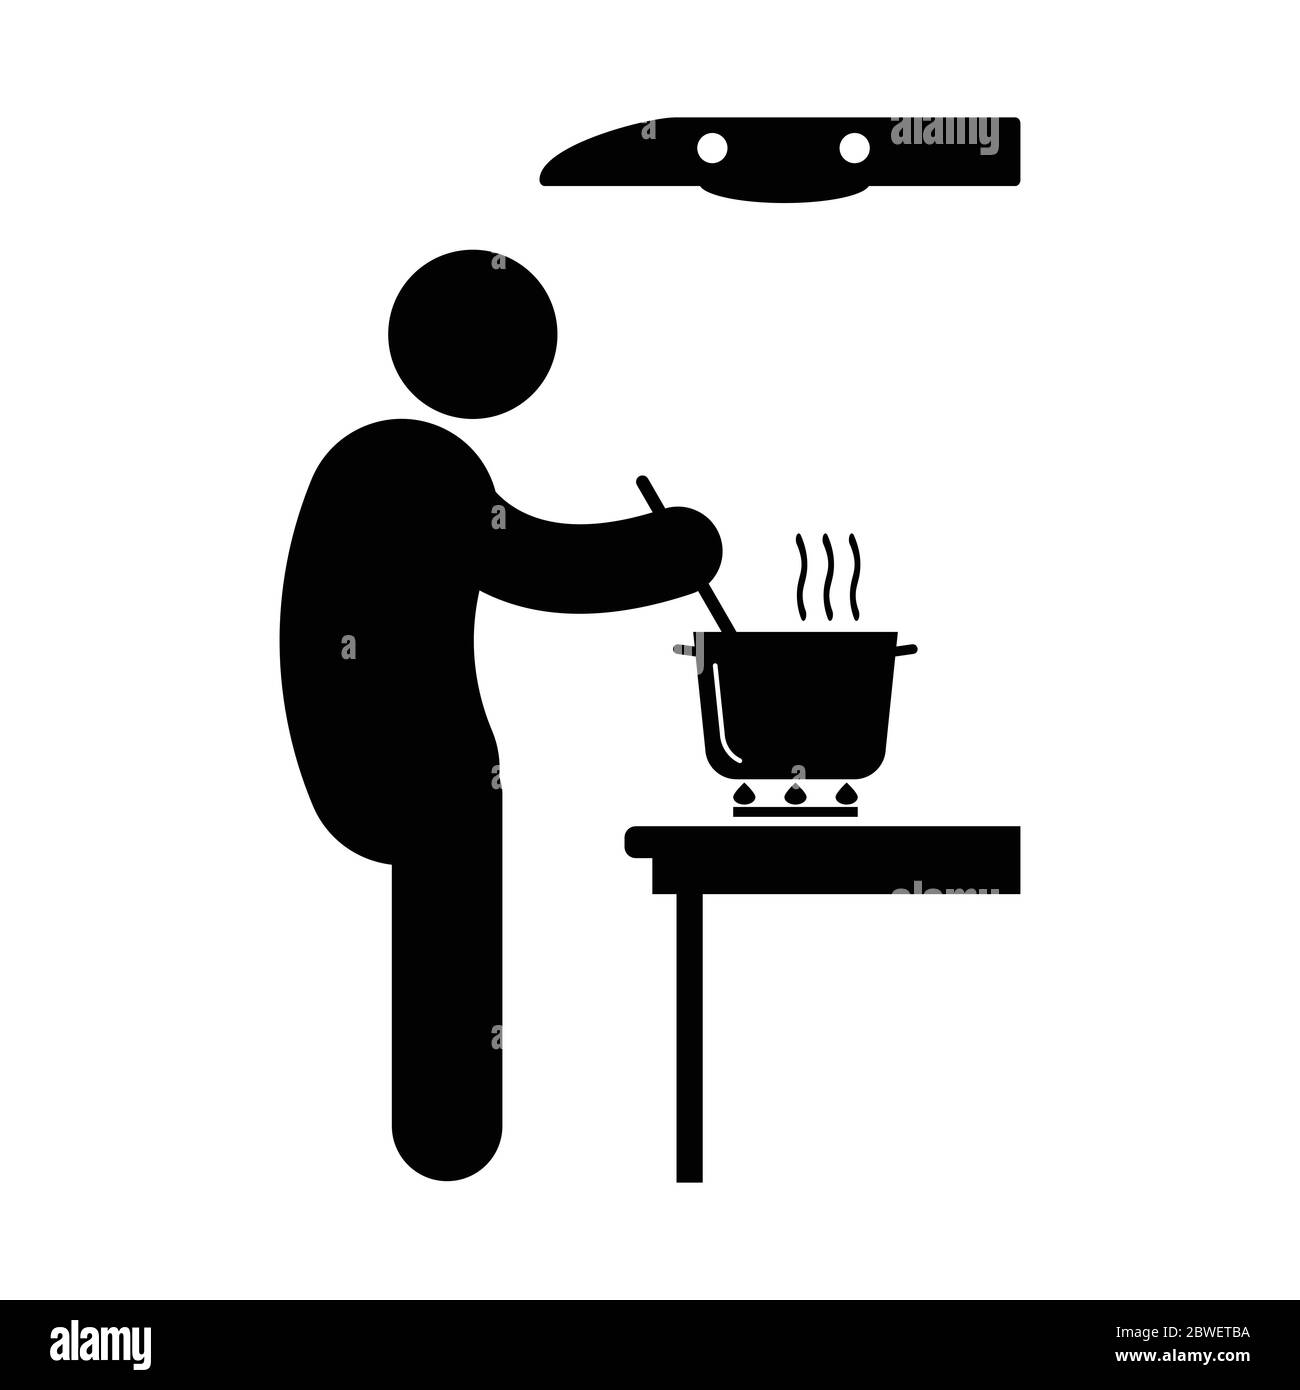 Kochen Über Herd Stick Figur. Schwarz-weißes Piktogramm, das den Mann darstellt, der im Topf über dem Feuerofen kocht, mit Entlüftung oben. Vektordatei Stock Vektor